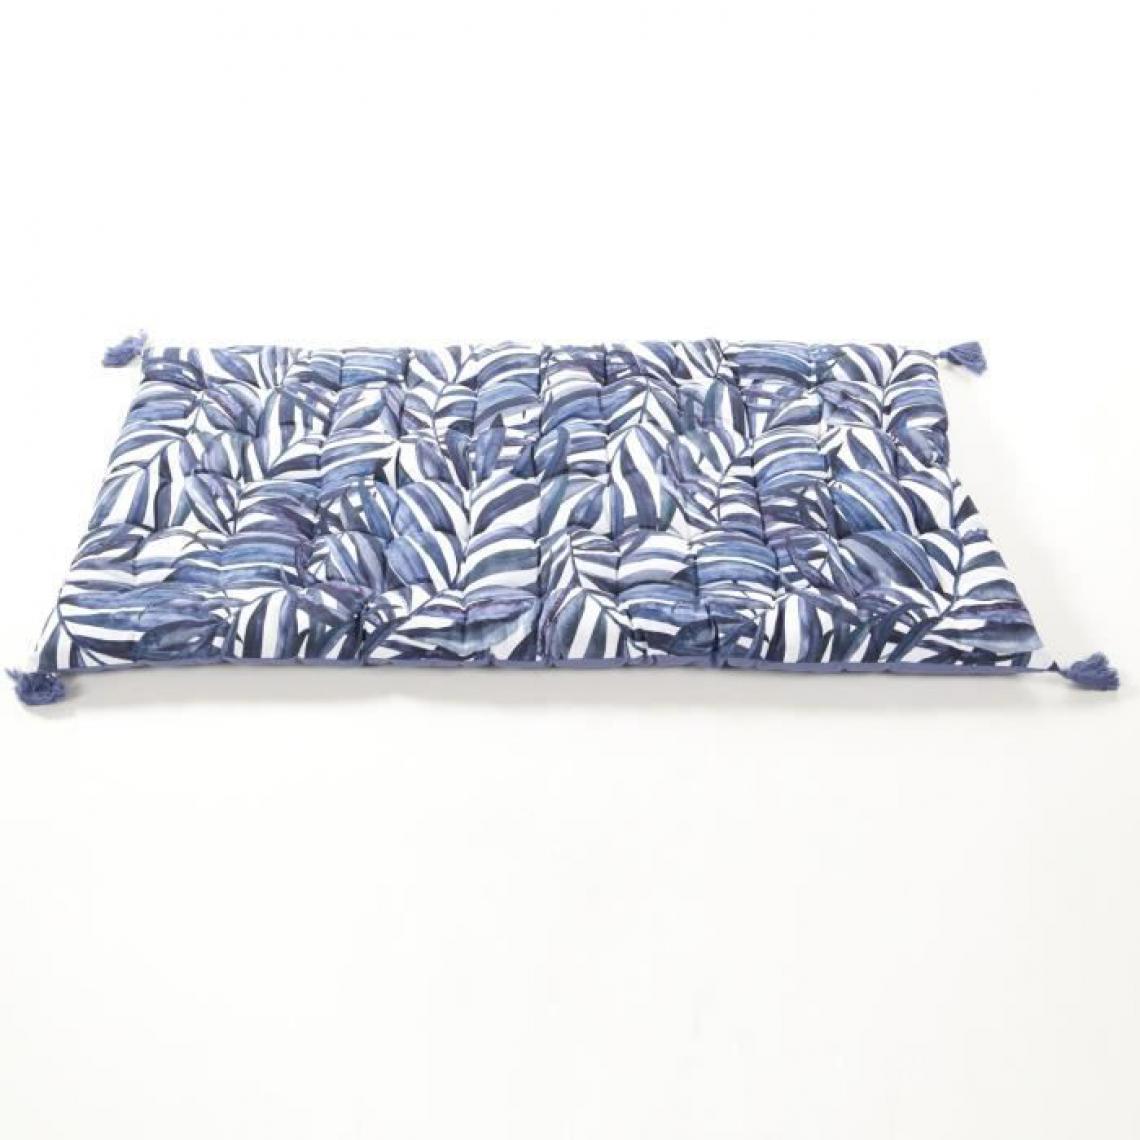 Cotton Wood - COTTON WOOD Matelas de sol souple coton imprimé - 60 x 120 x 5 cm - Blue Palm - Coussins, galettes de jardin